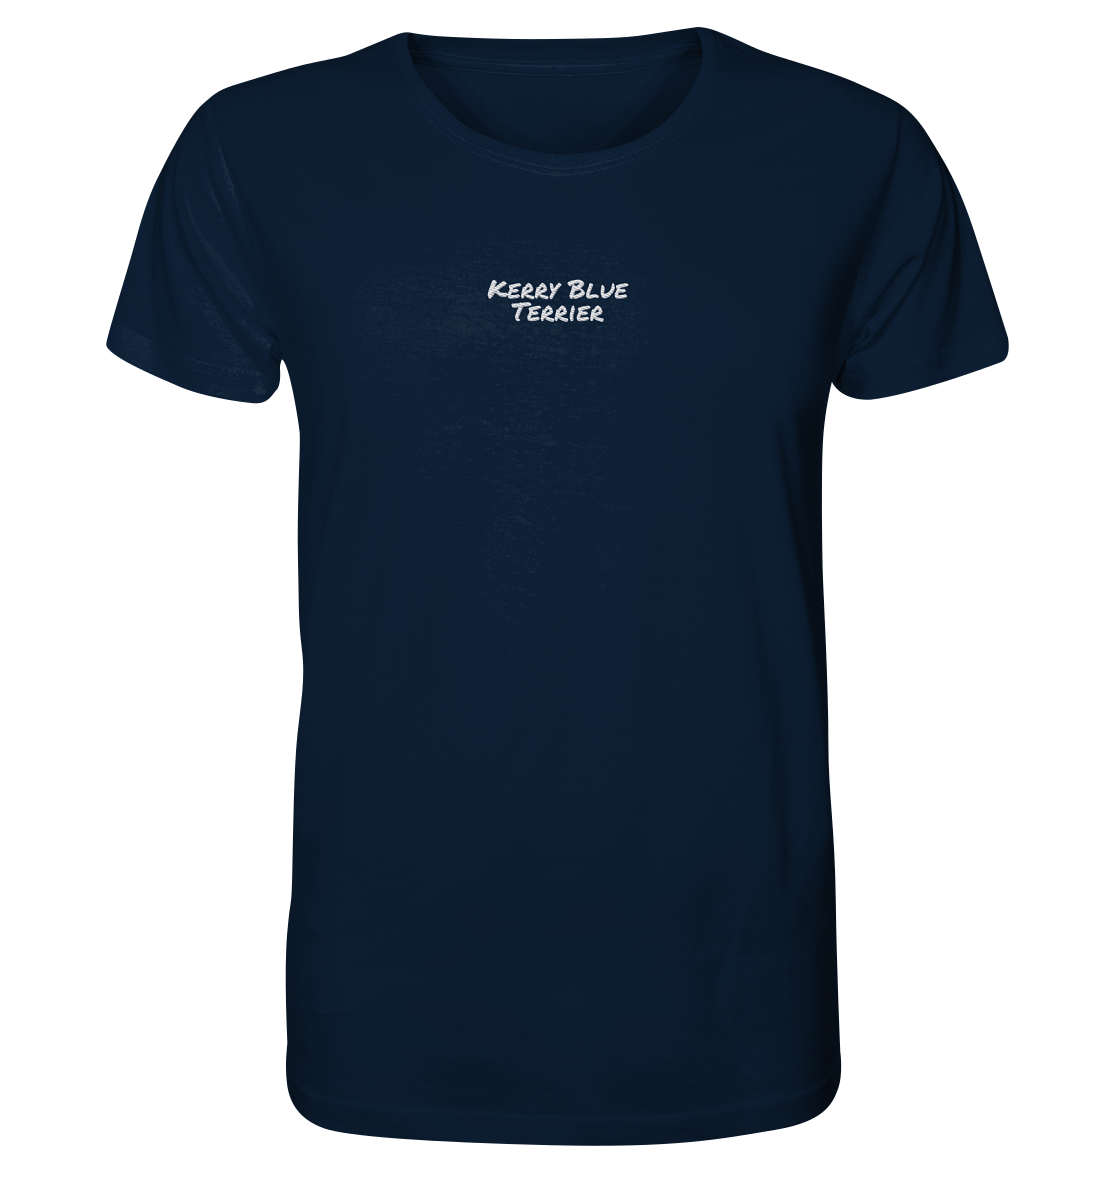 Kerry Blue Terrier - Organic Shirt (Stick)